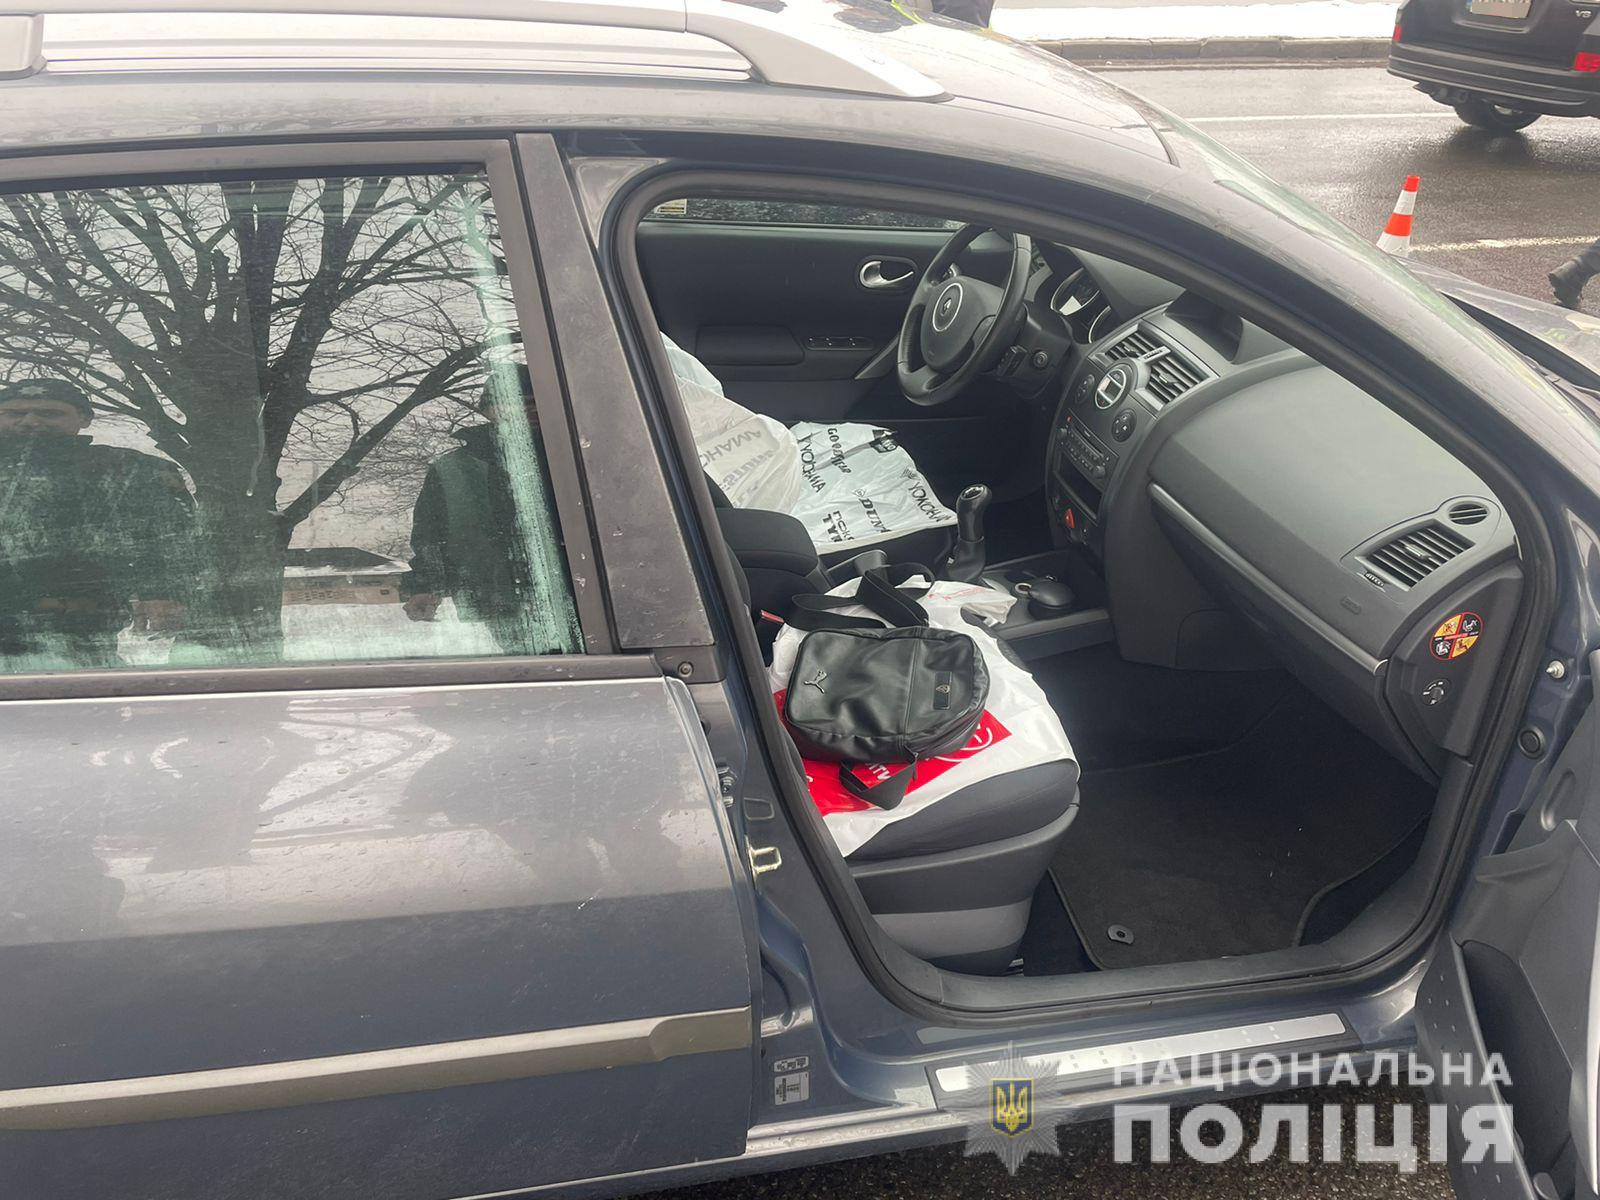 Криминал Харьков: Избили водителя маршрутки двое хулиганов на улице 12 Апреля